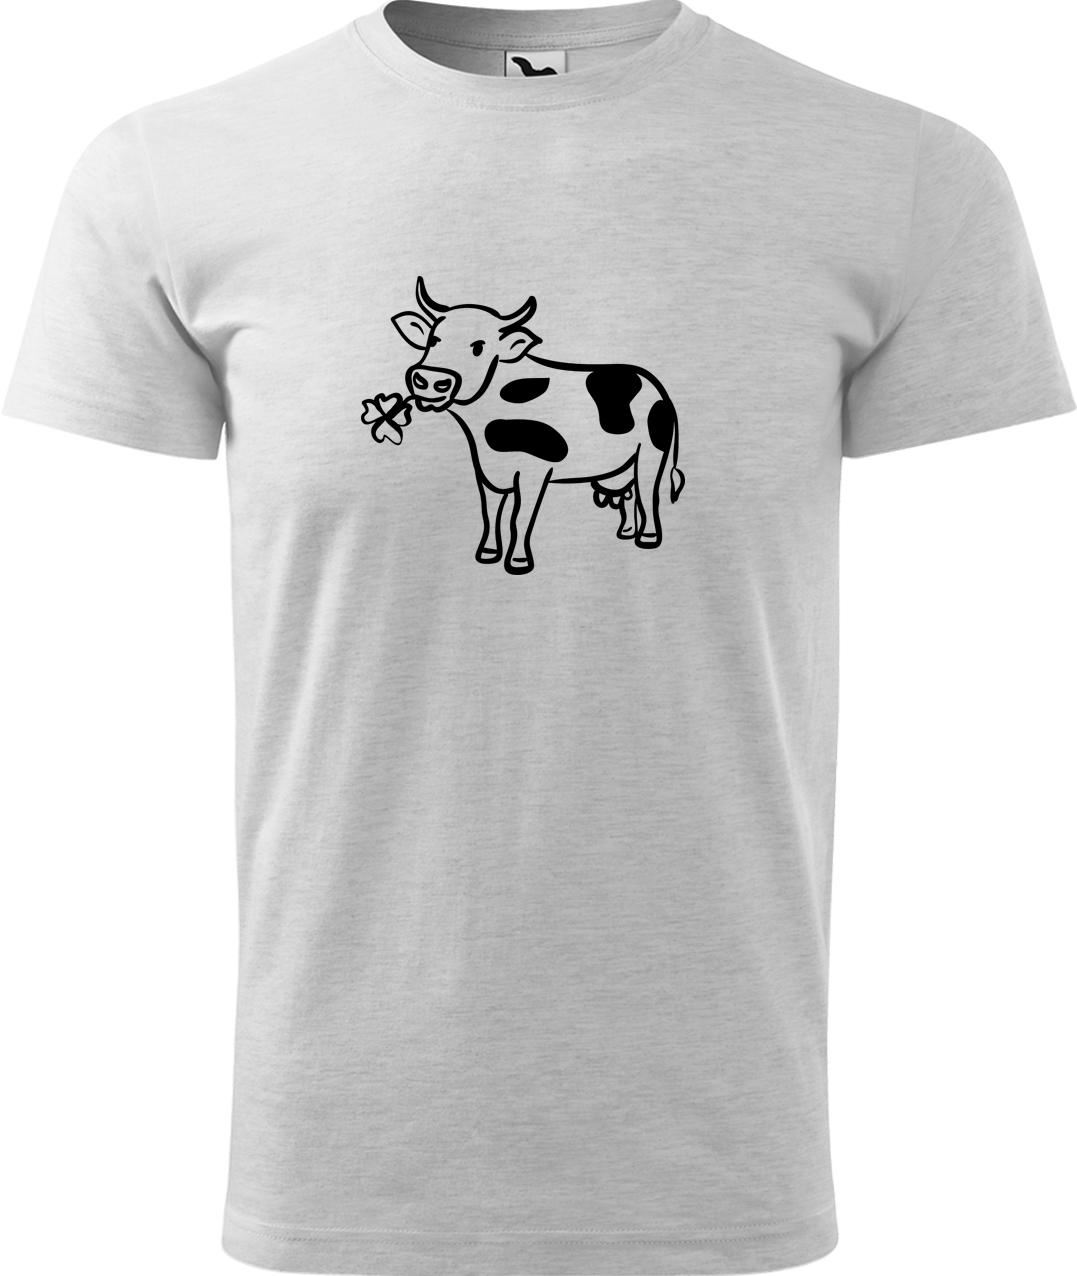 Pánské tričko s krávou - Kravička a jetel Velikost: M, Barva: Světle šedý melír (03), Střih: pánský